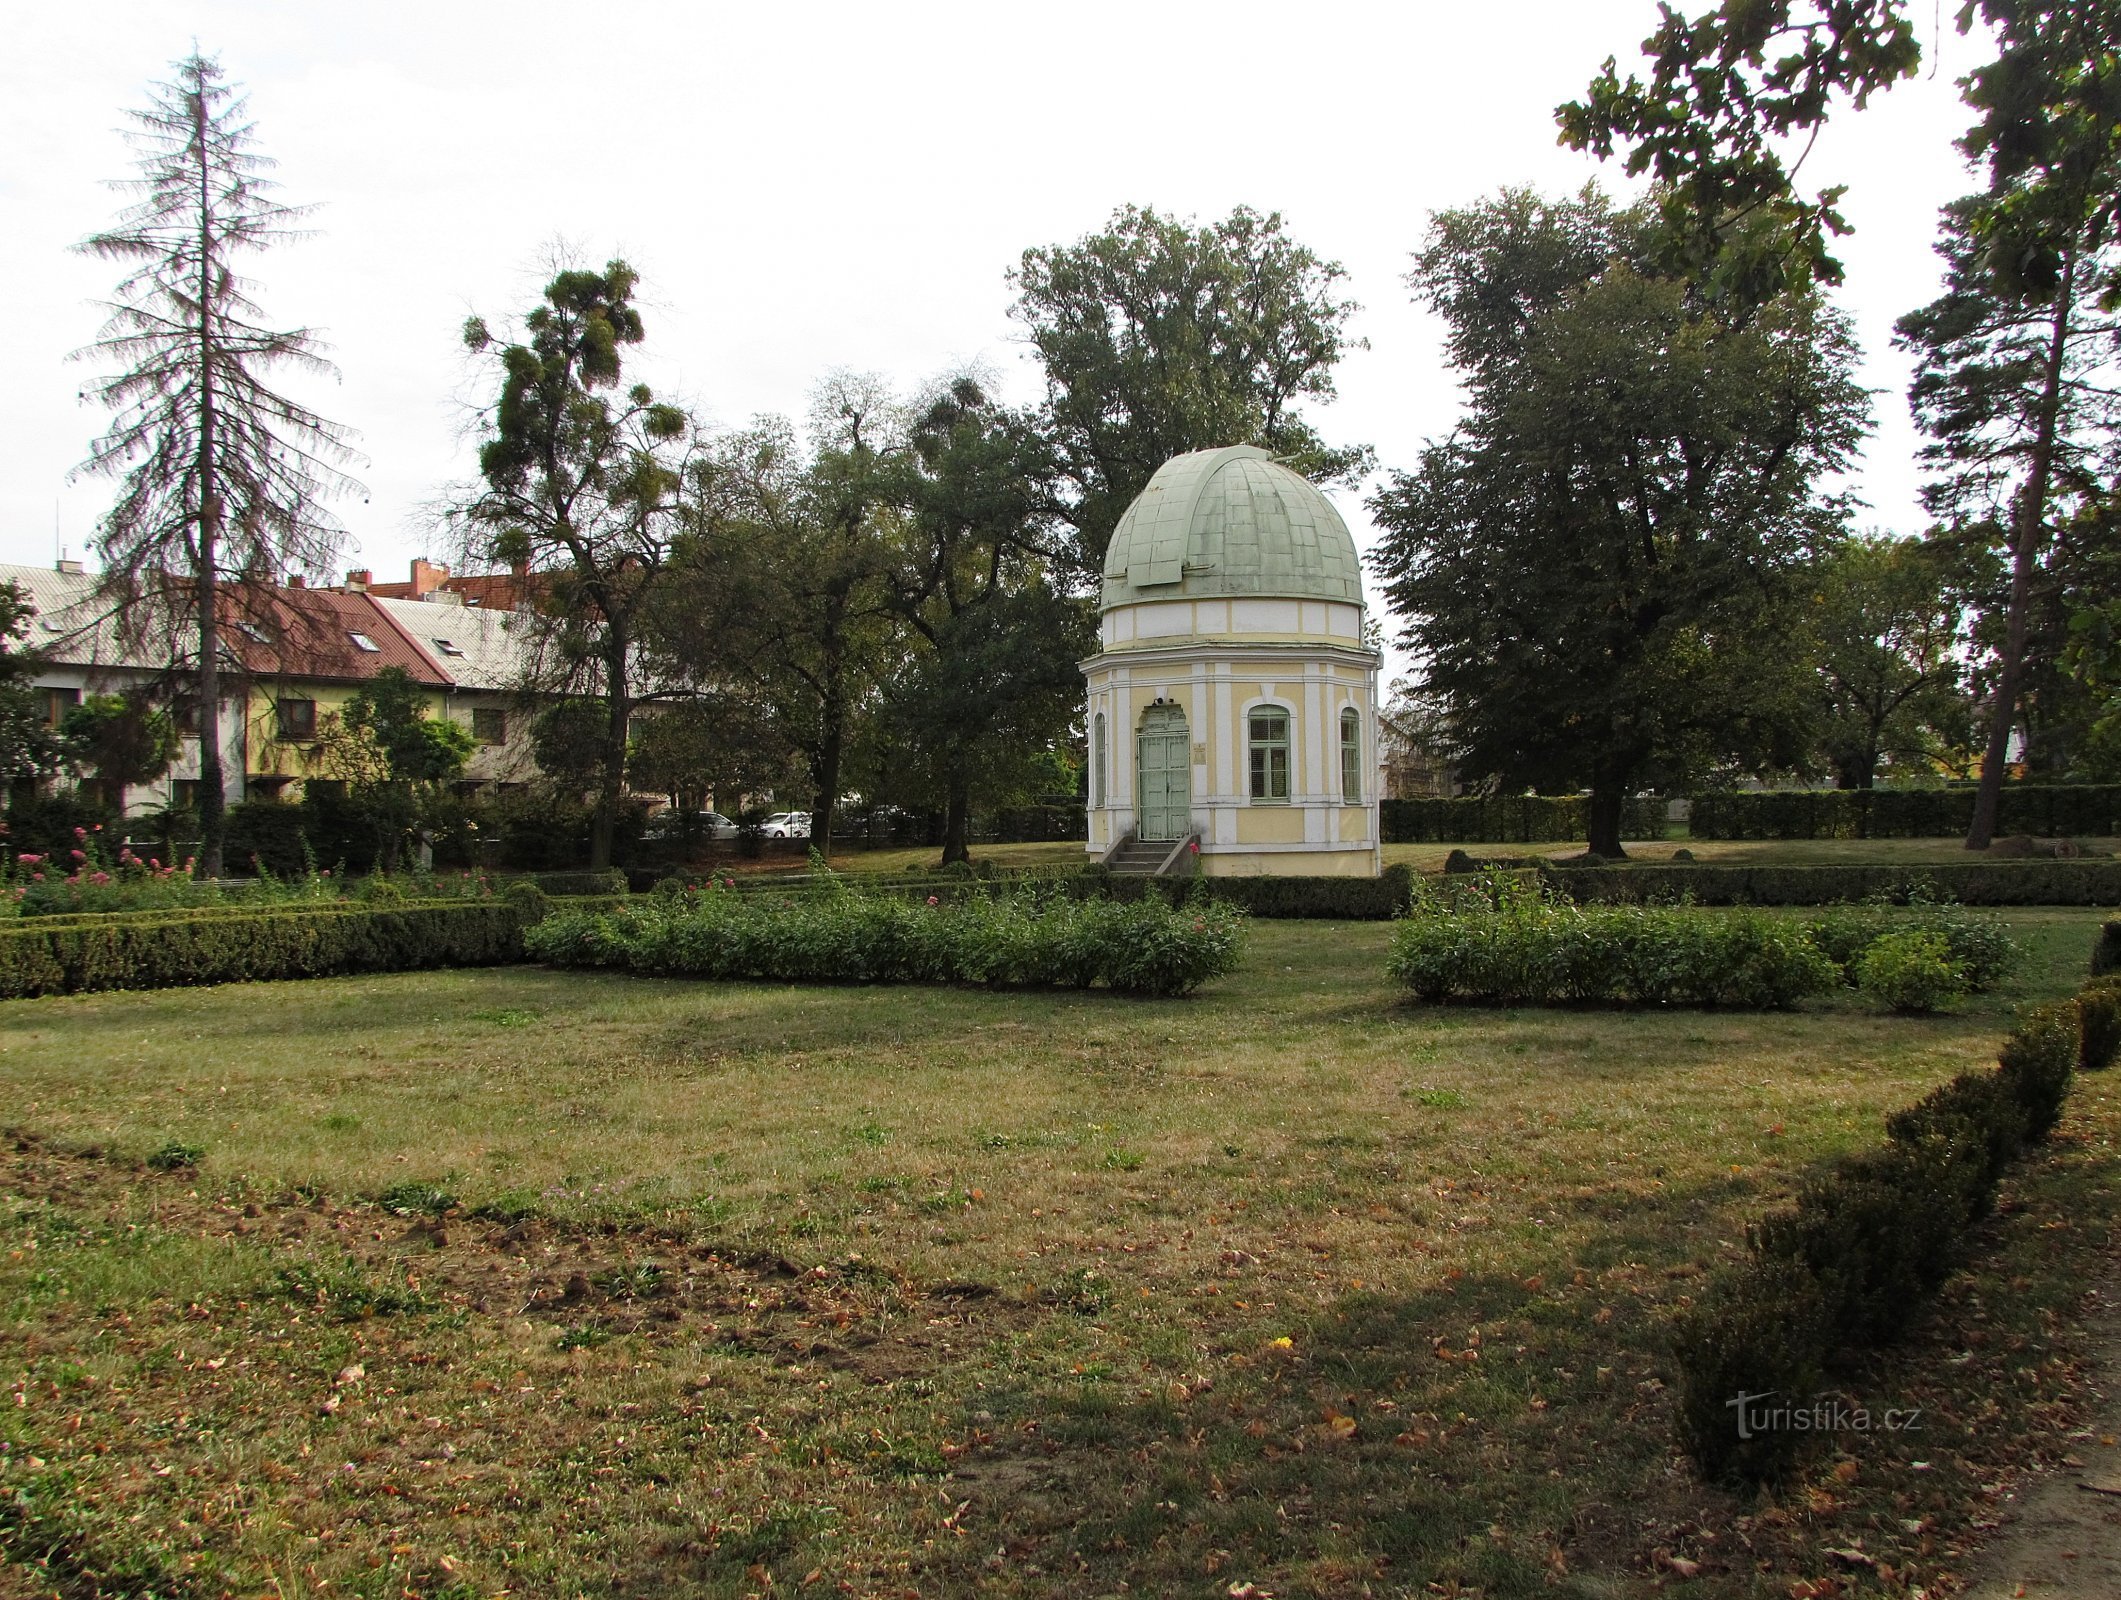 Holešov - đài tưởng niệm nhà soạn nhạc và đài quan sát